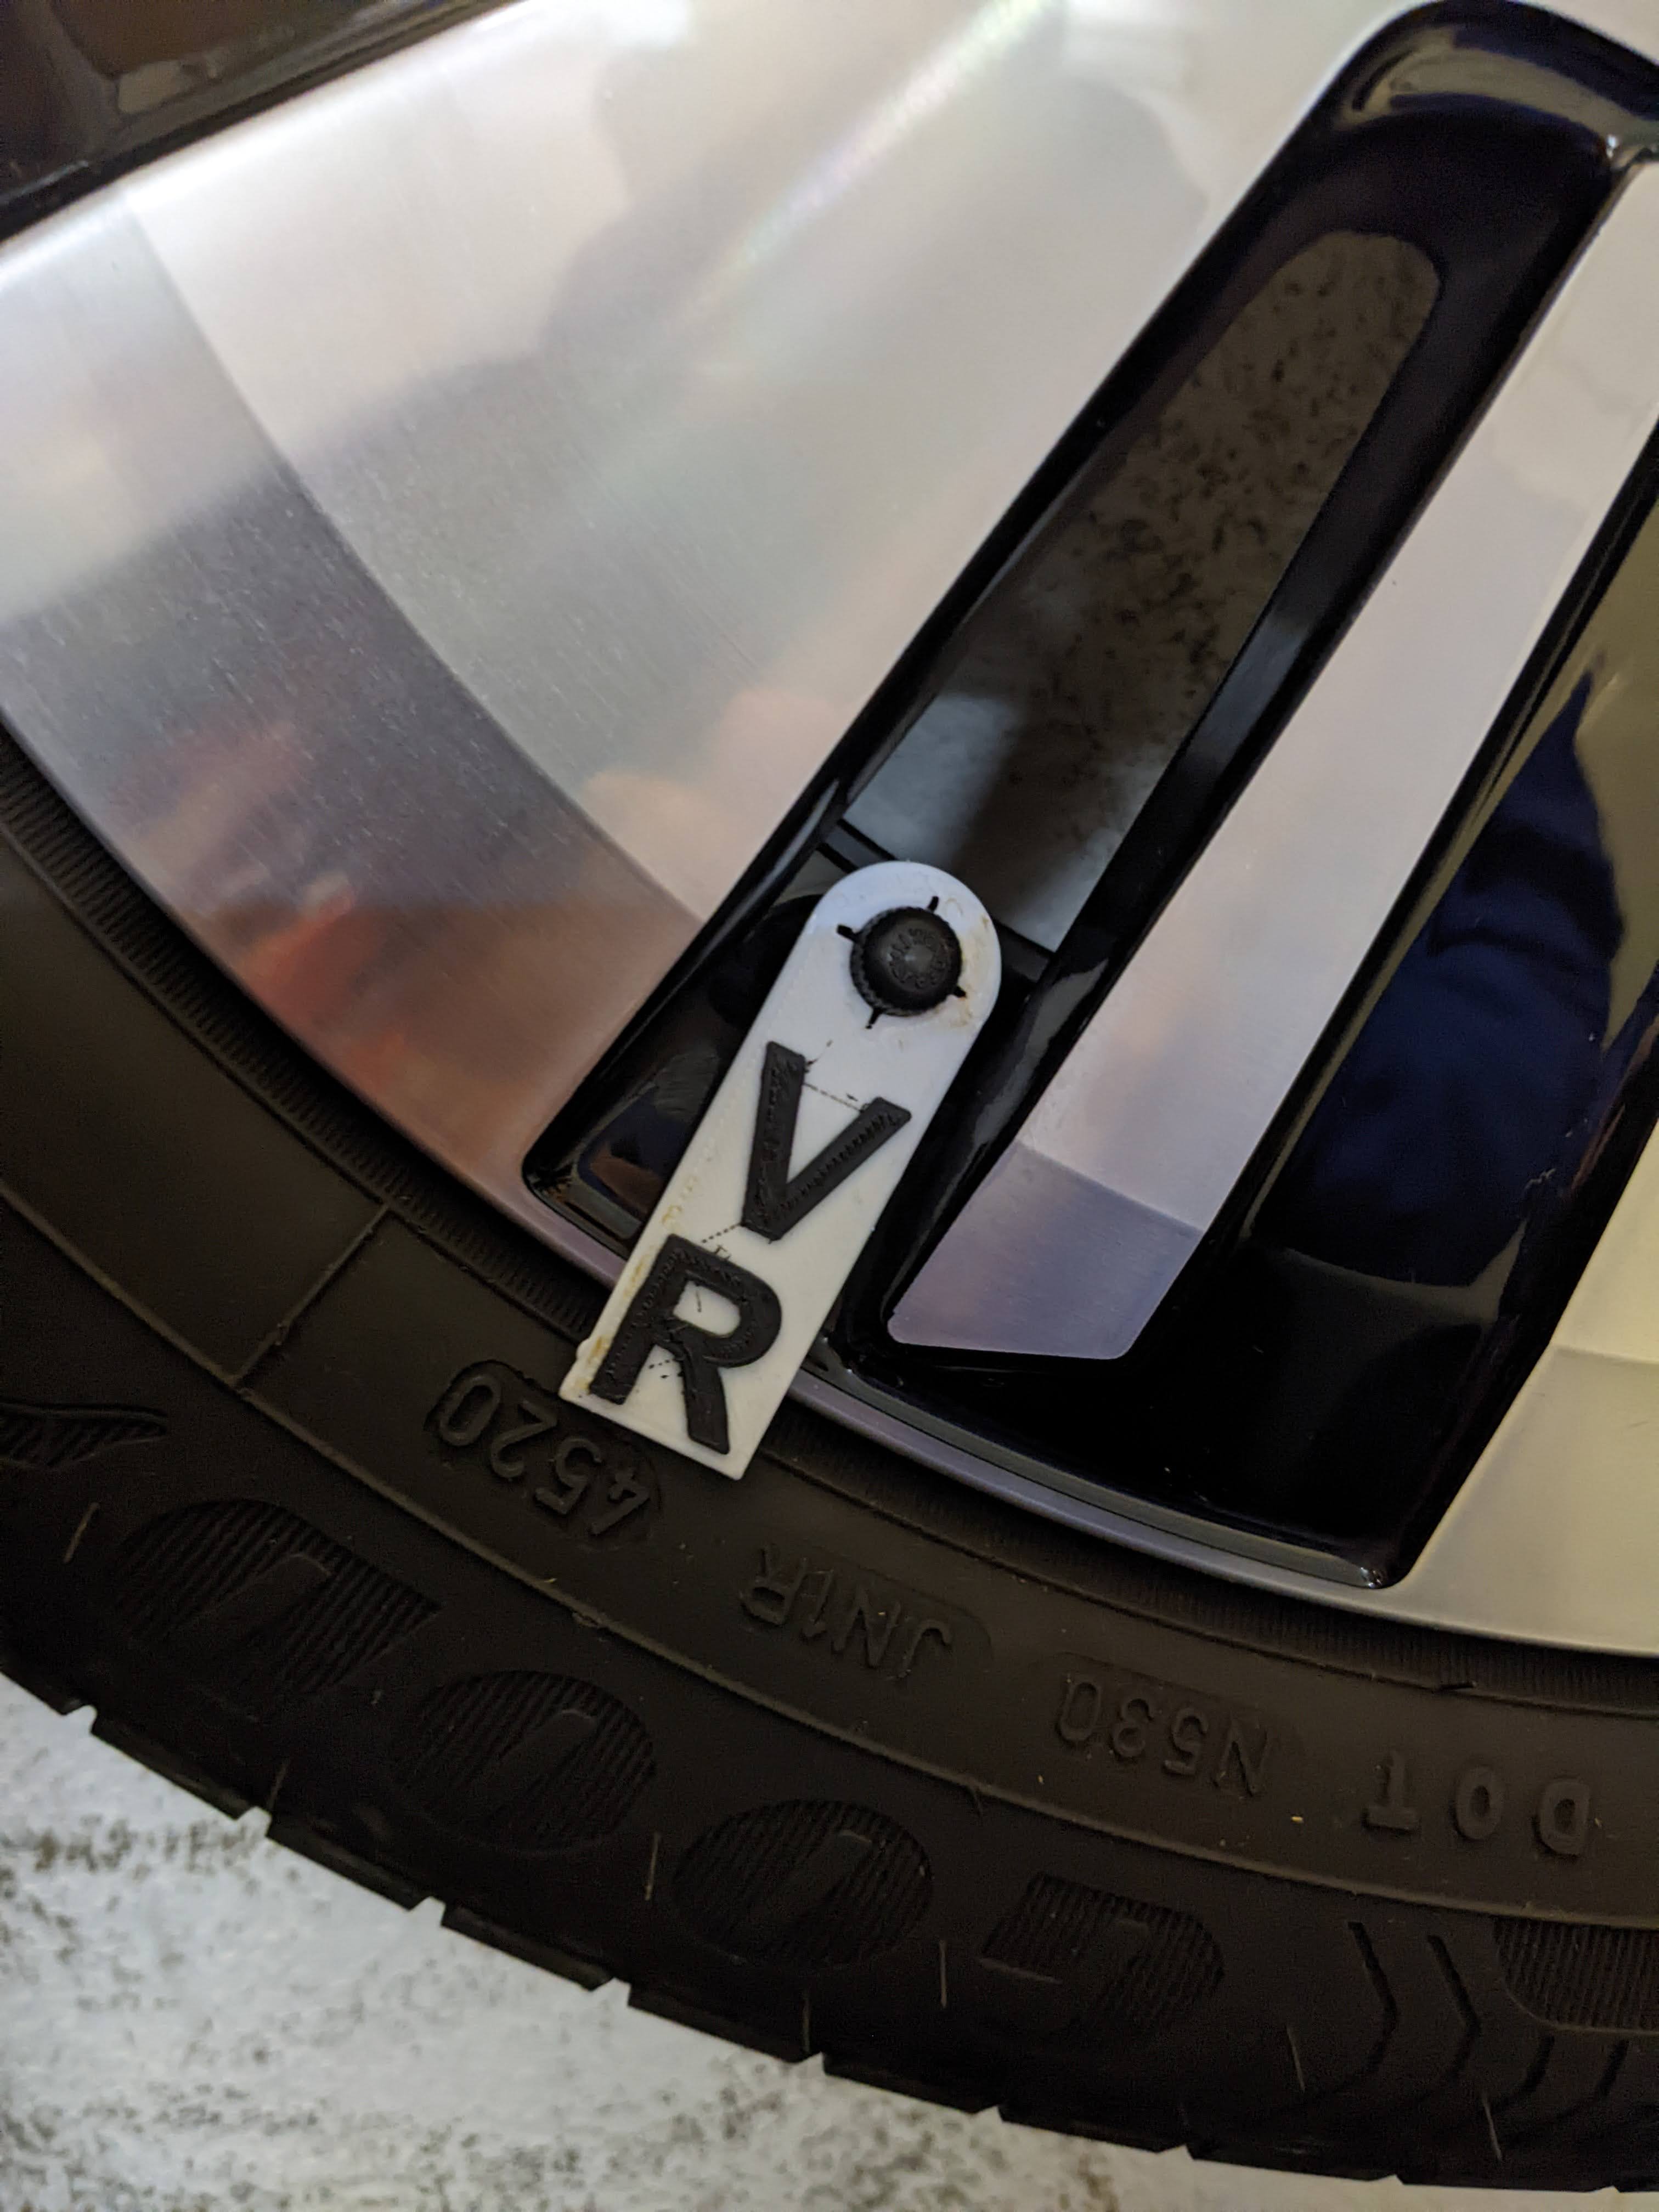 Reifen Marker (tire marker)